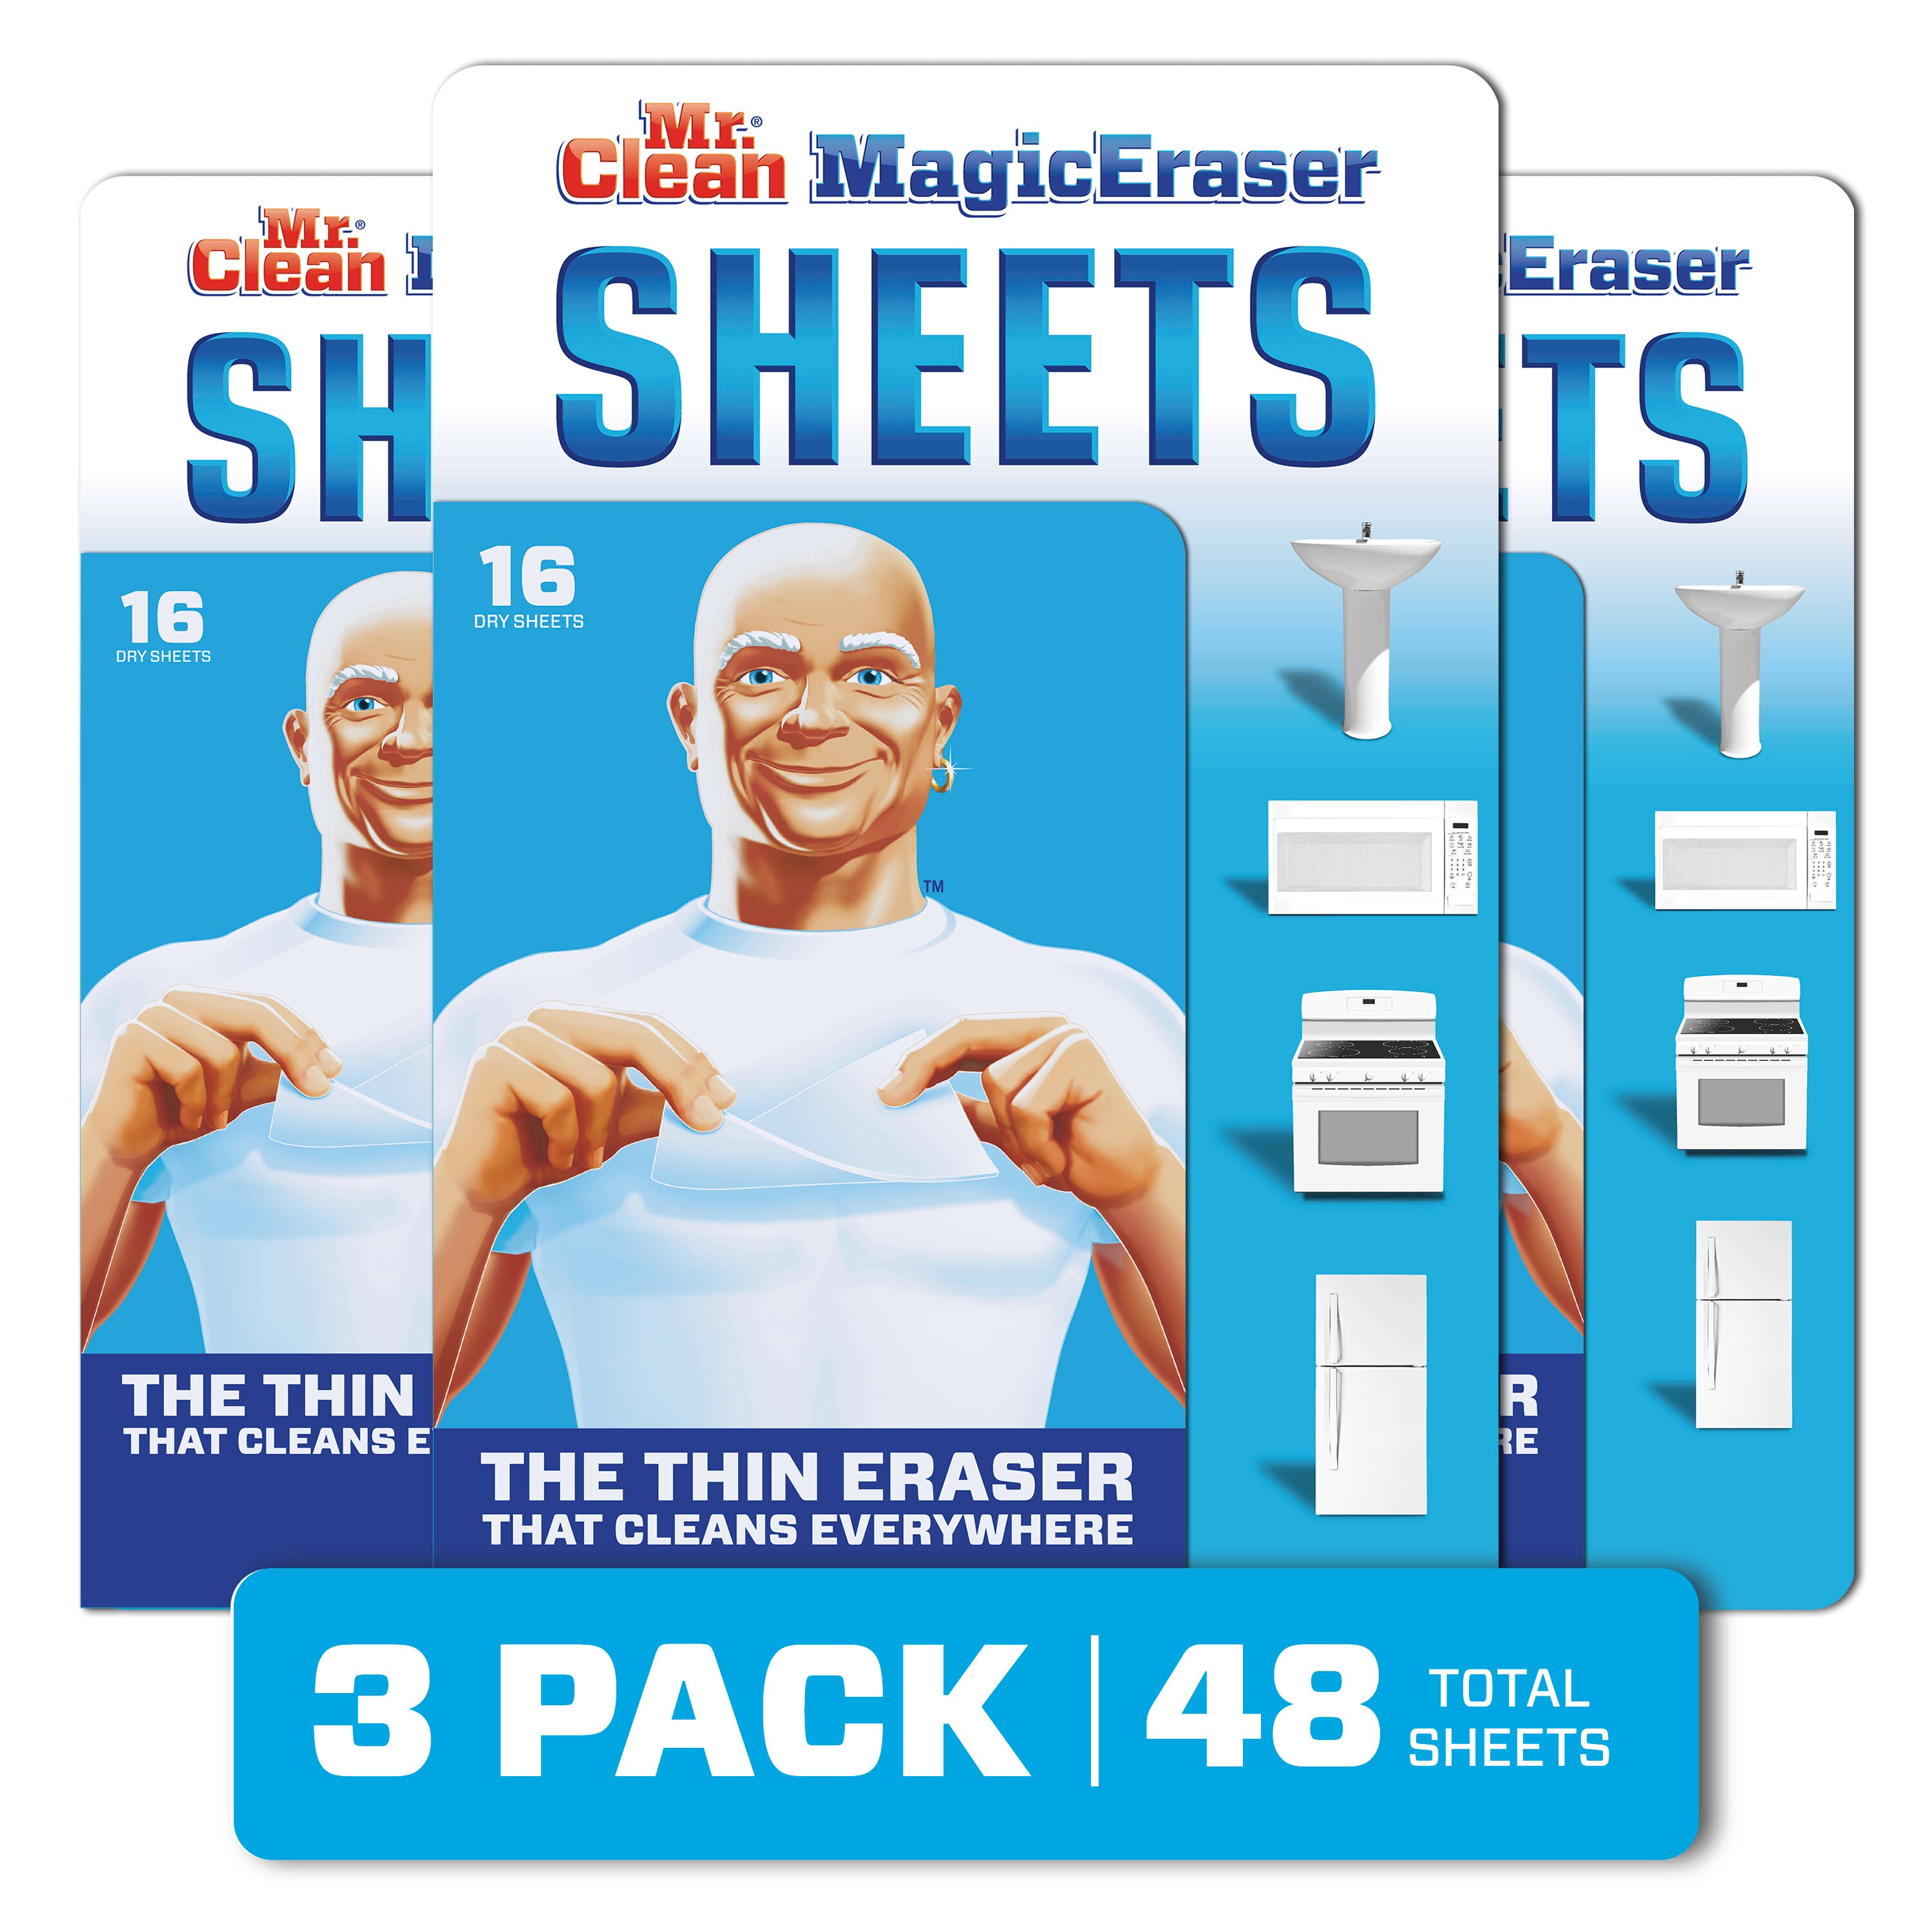 Khăn lau sạch Mr. Clean Magic Eraser là thứ bạn cần để dọn dẹp mọi loại vết bẩn khó chịu trong nhà. Với công nghệ đặc biệt, khăn lau này có thể tẩy sạch những vệt mực, bẩn, và vết bẩn đen trên các bề mặt mà các khăn lau truyền thống không thể làm được. Hãy xem hình ảnh để thấy sự khác biệt từ khăn lau Mr. Clean Magic Eraser!